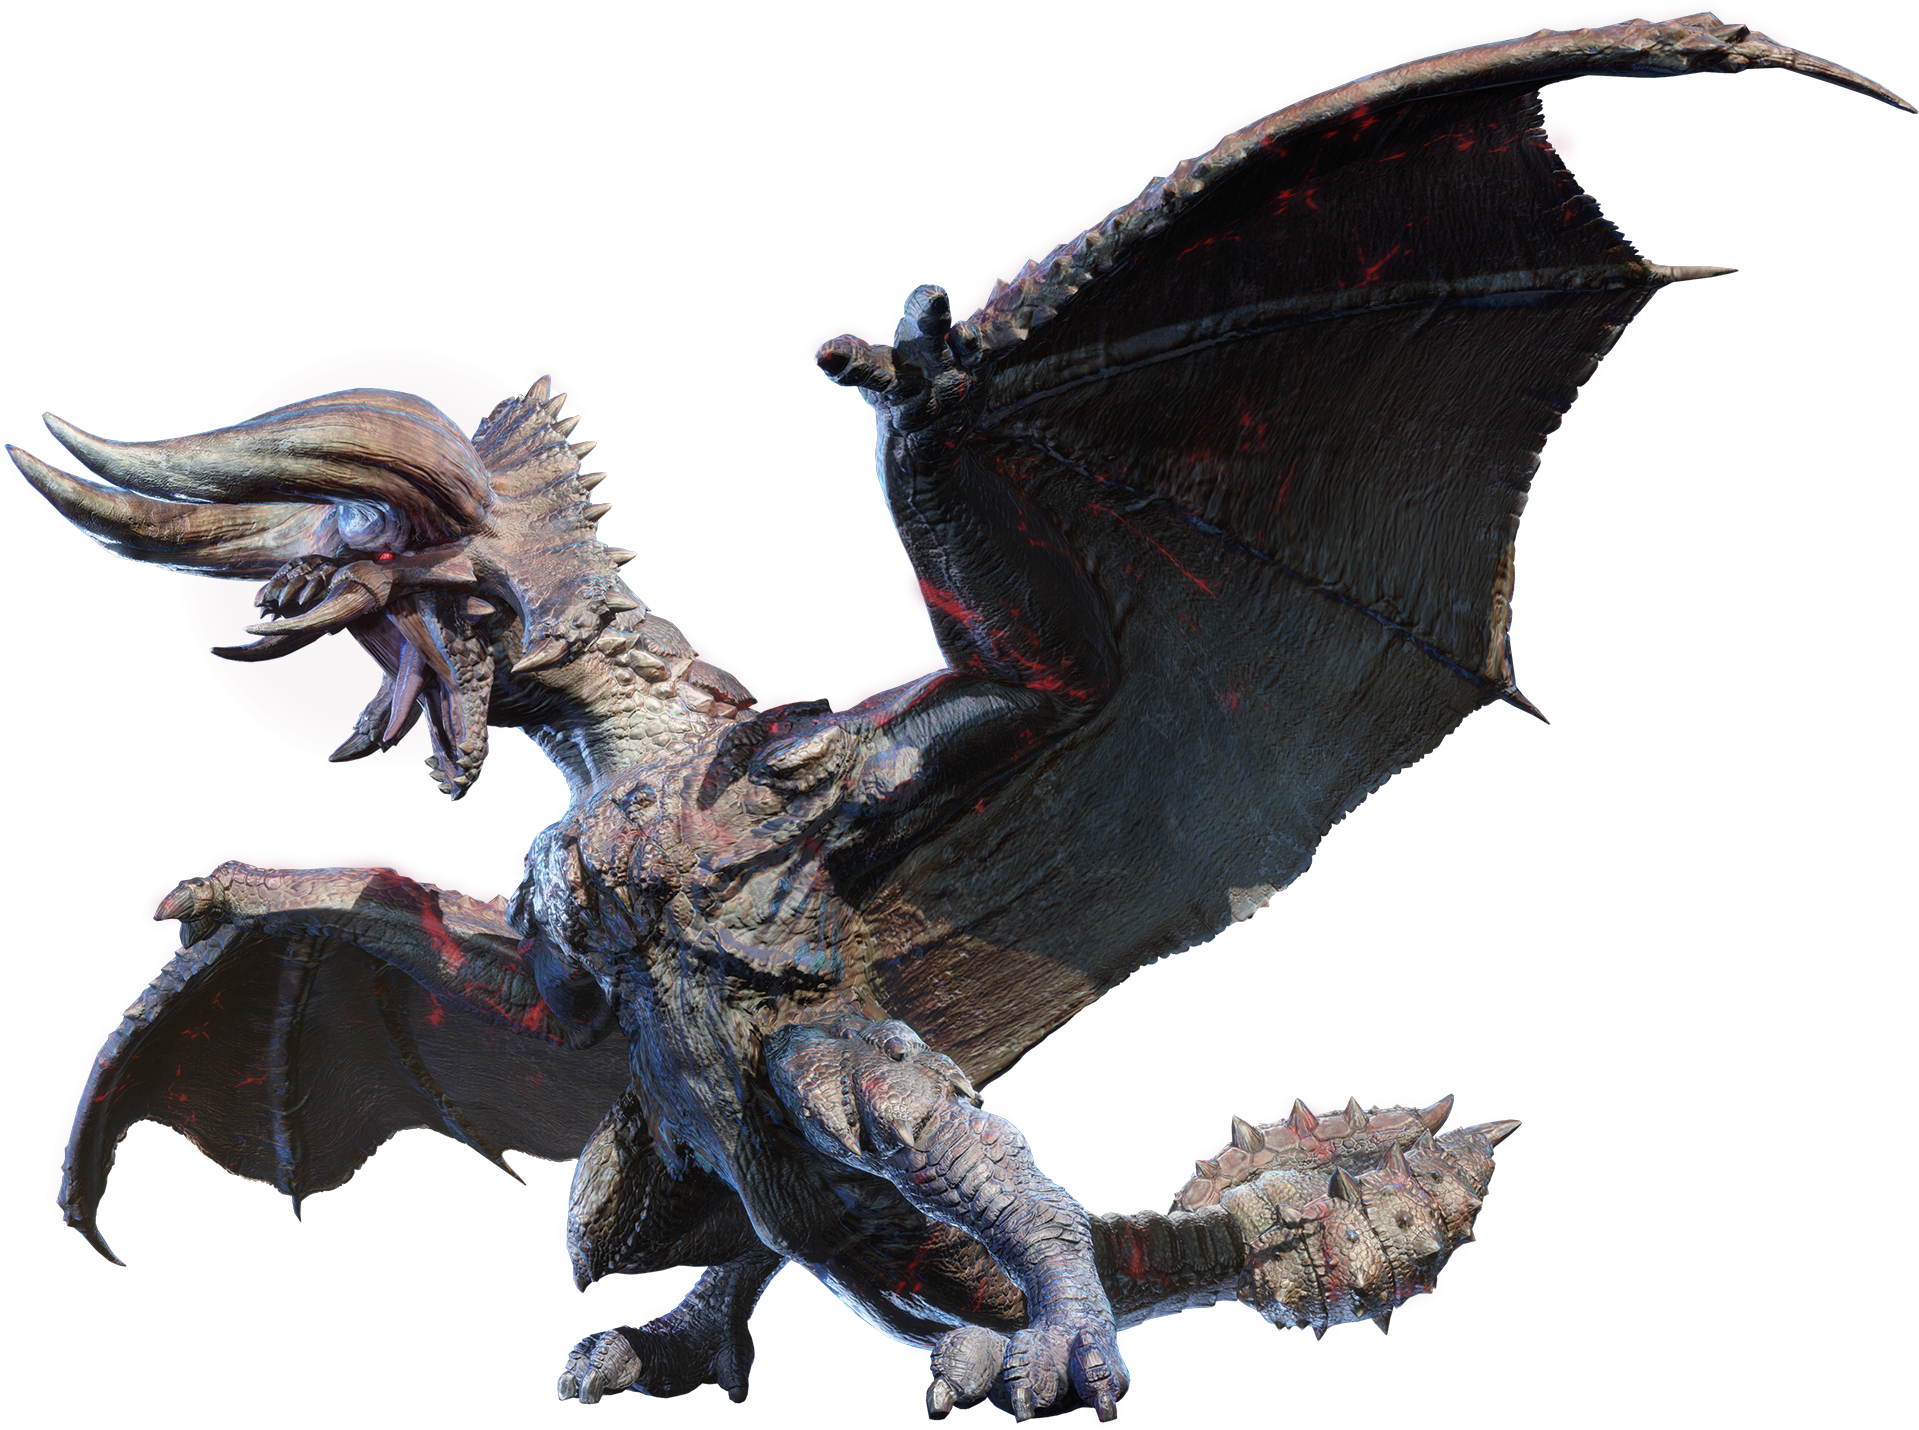 Diablos/Monster Hunter World, Monster Hunter Wiki